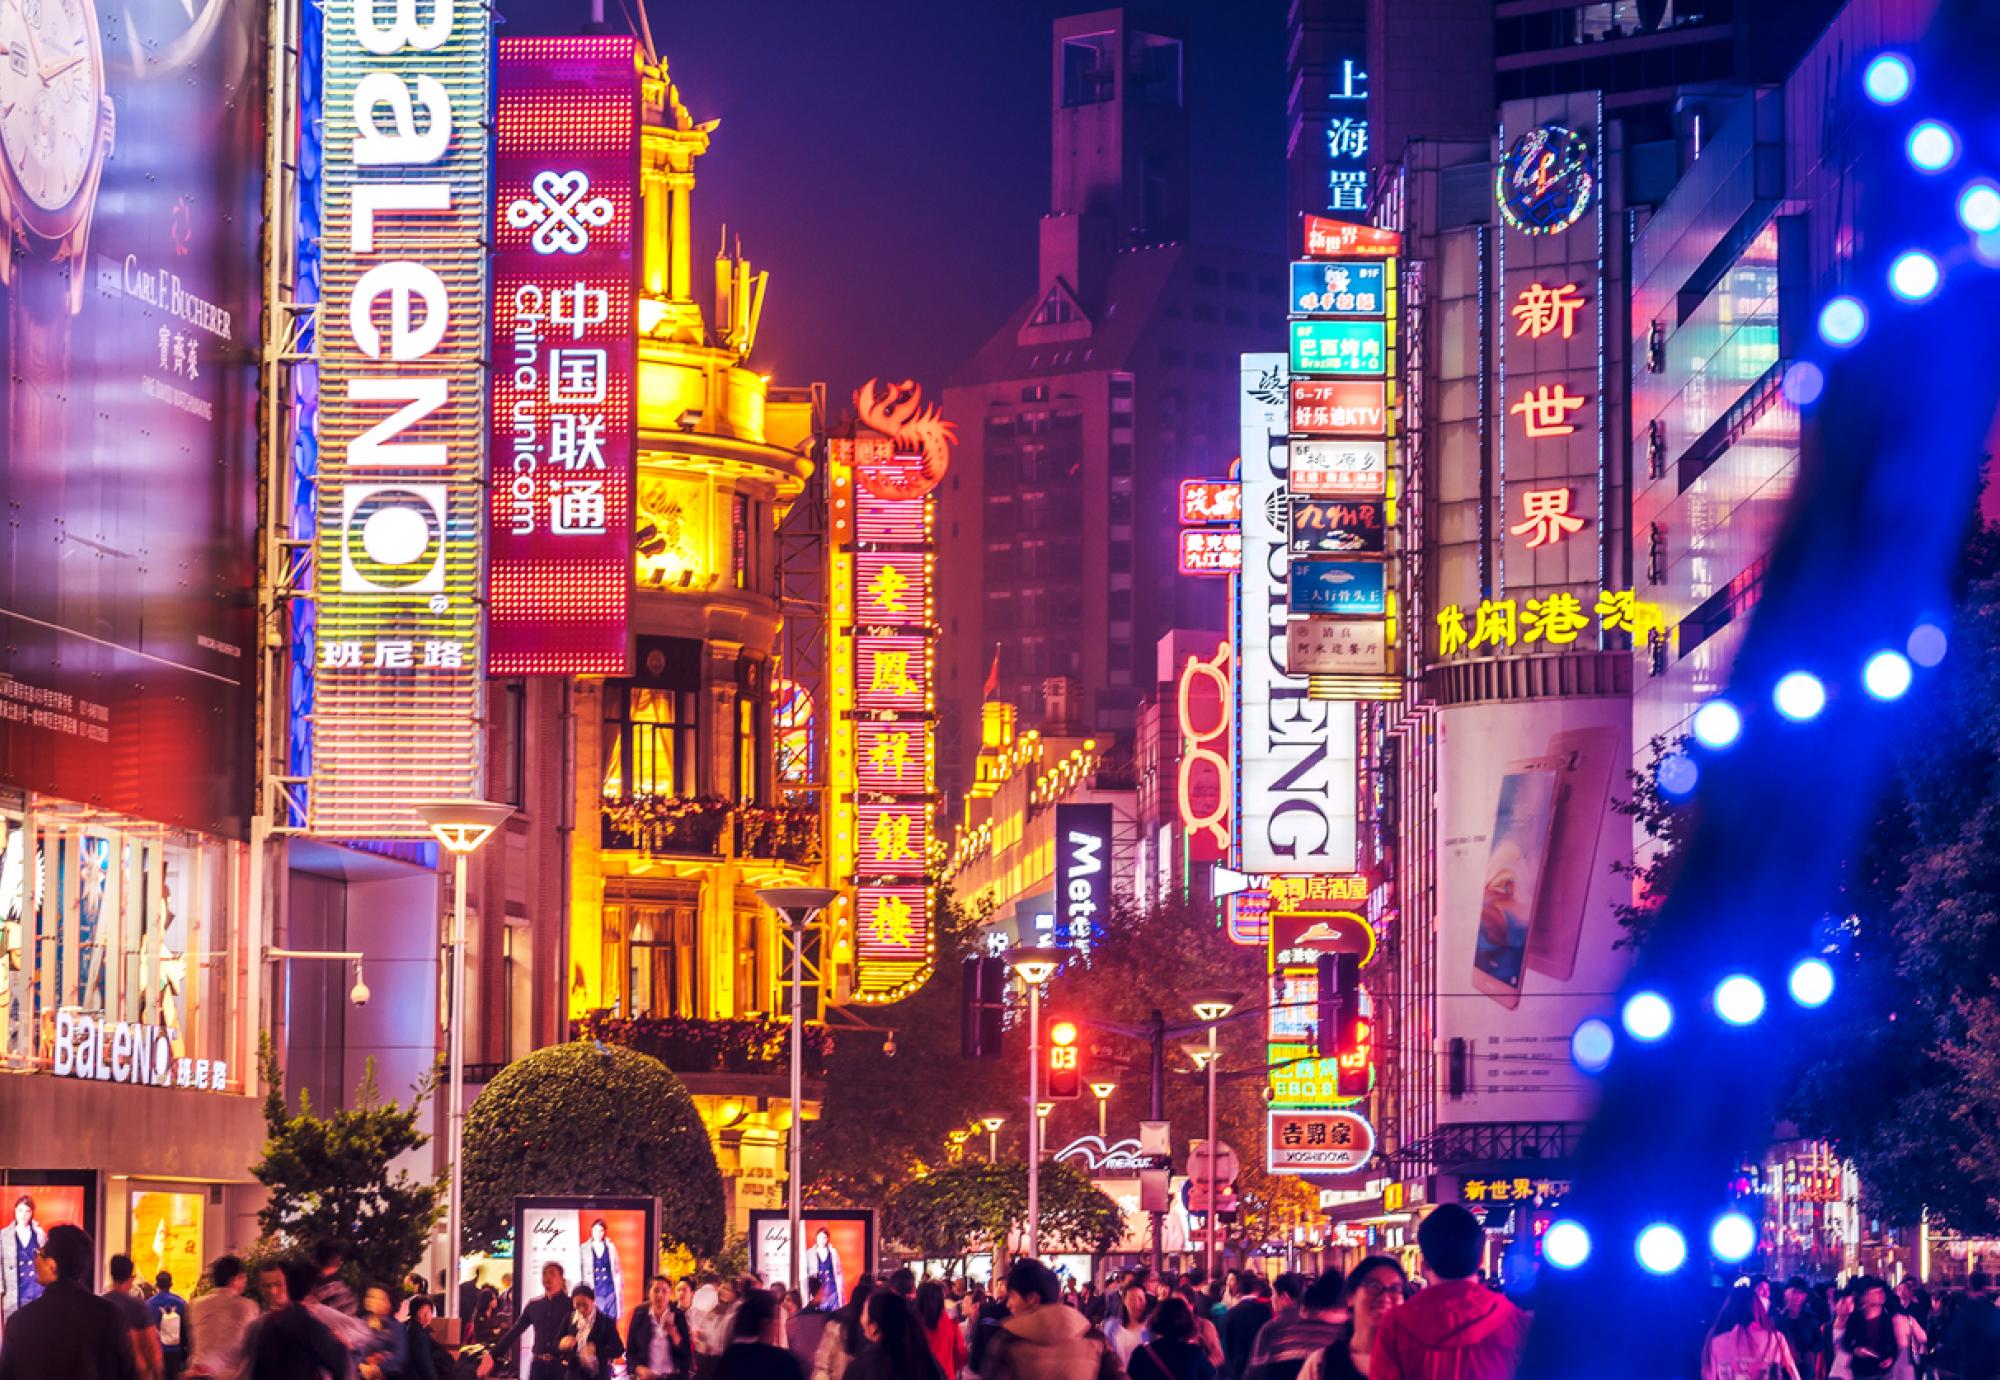 Crowds walk below neon signs on Nanjing Road, Shanghai